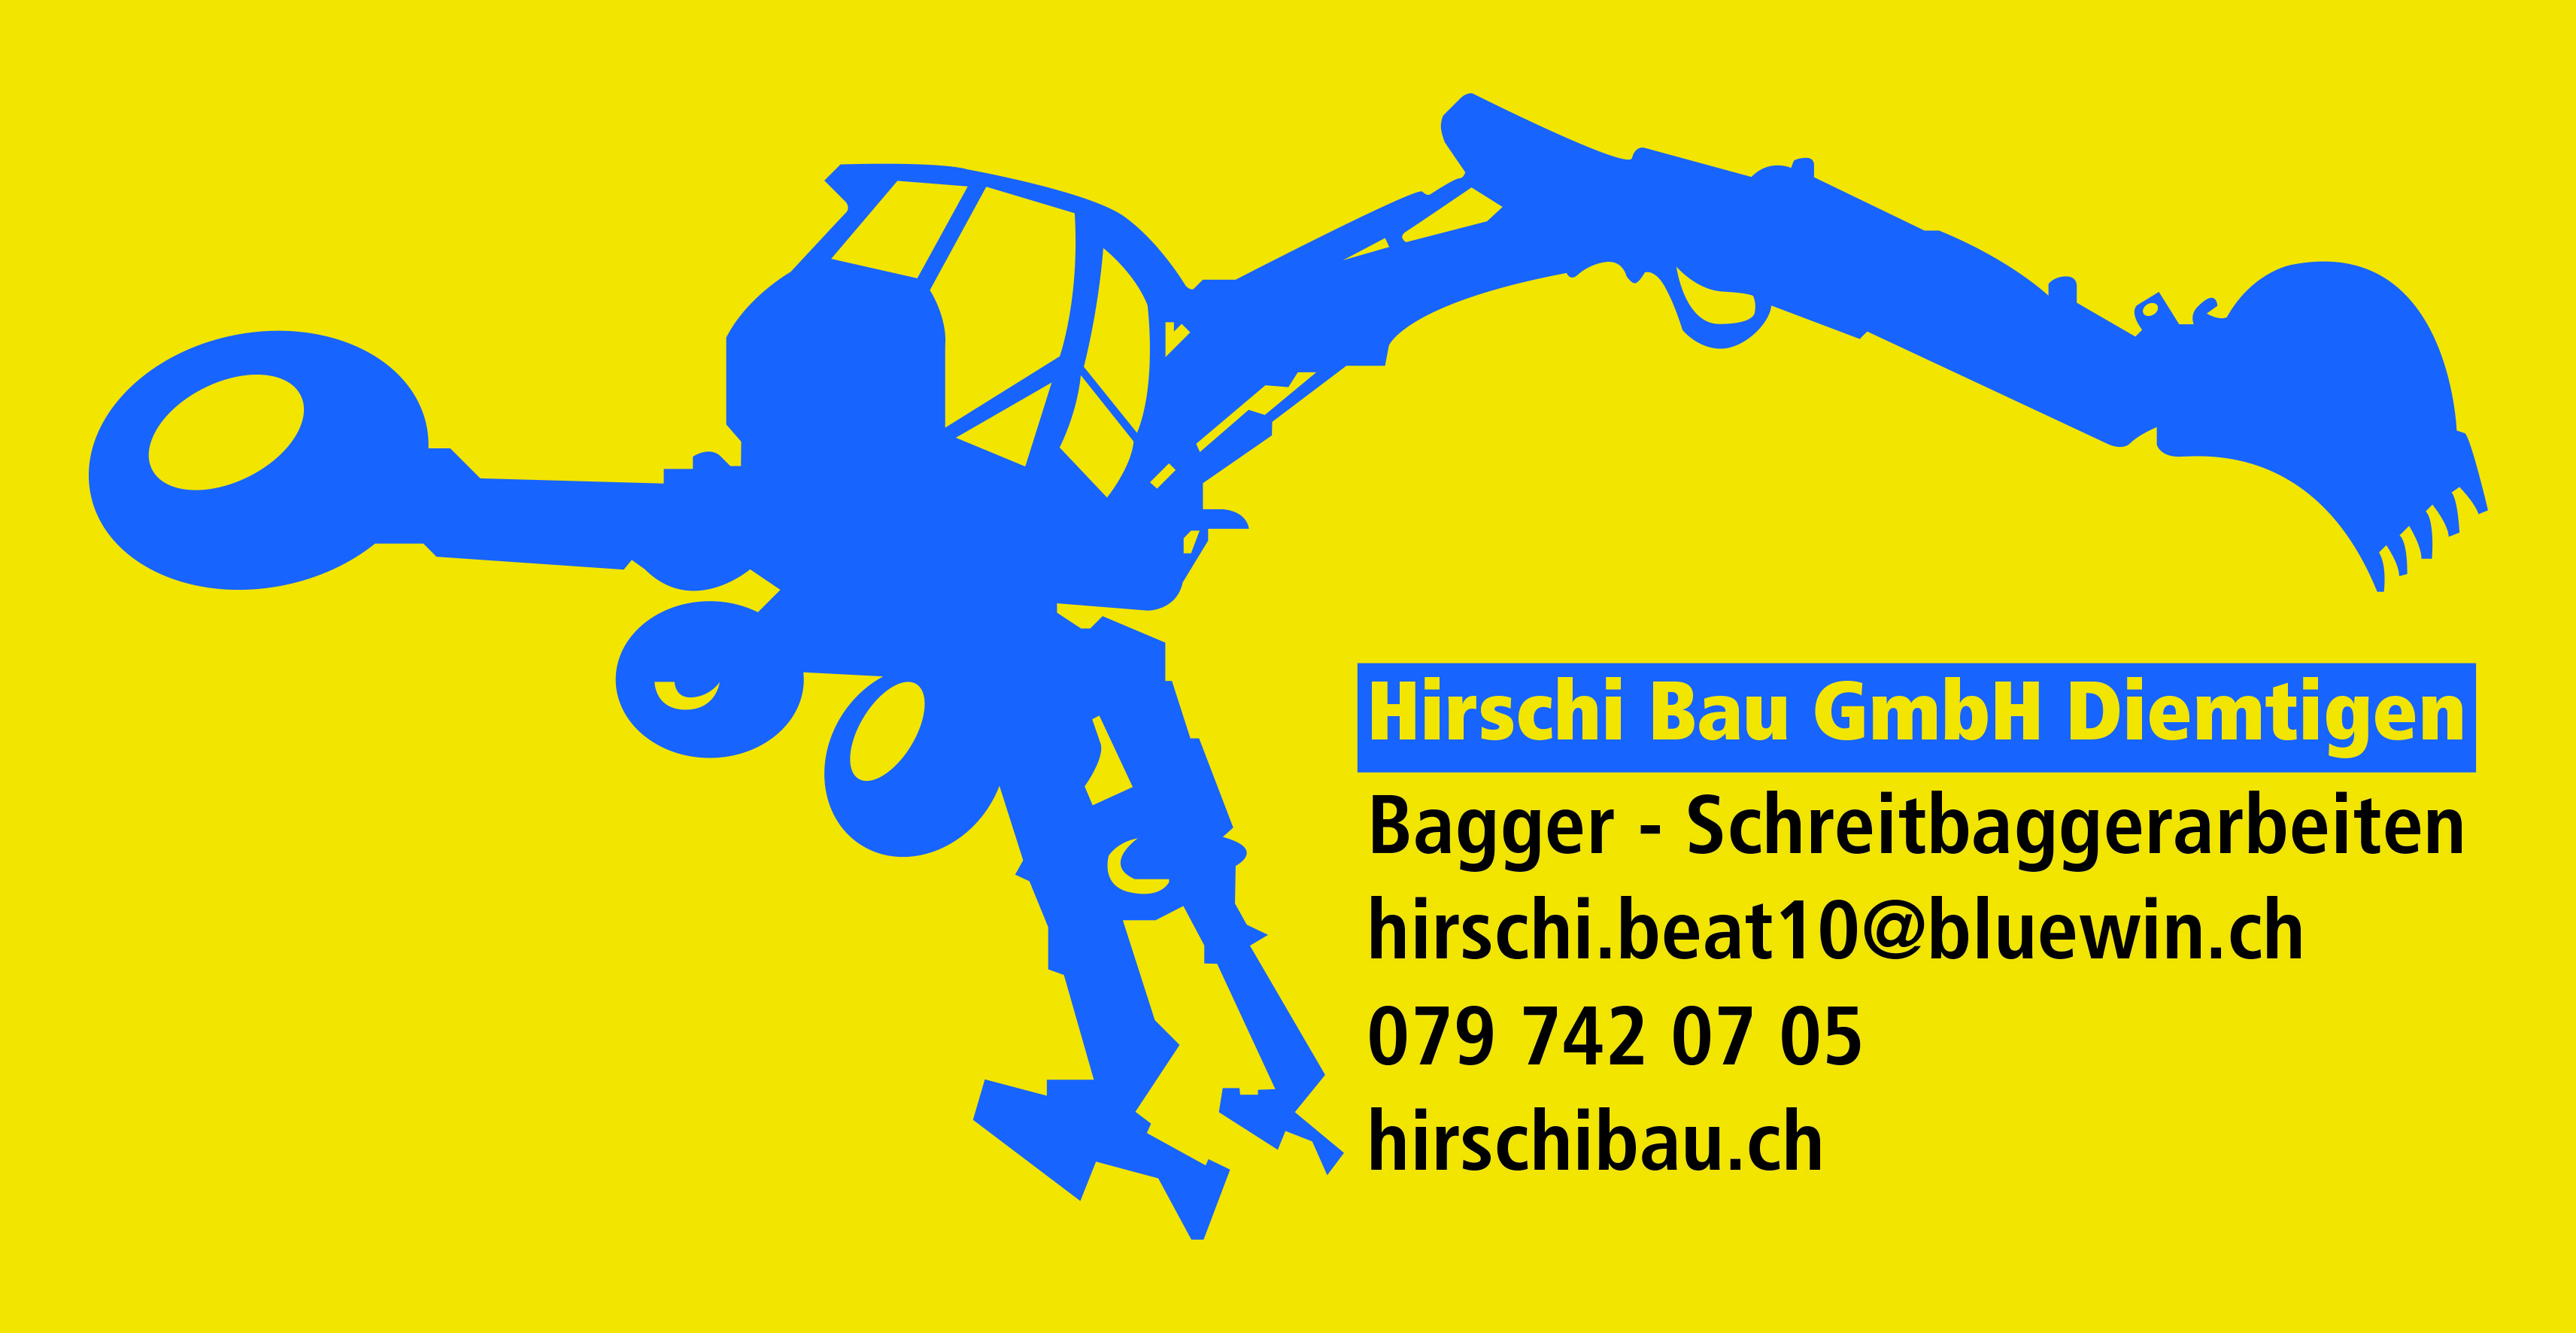 Hirschibau GmbH Diemtigen